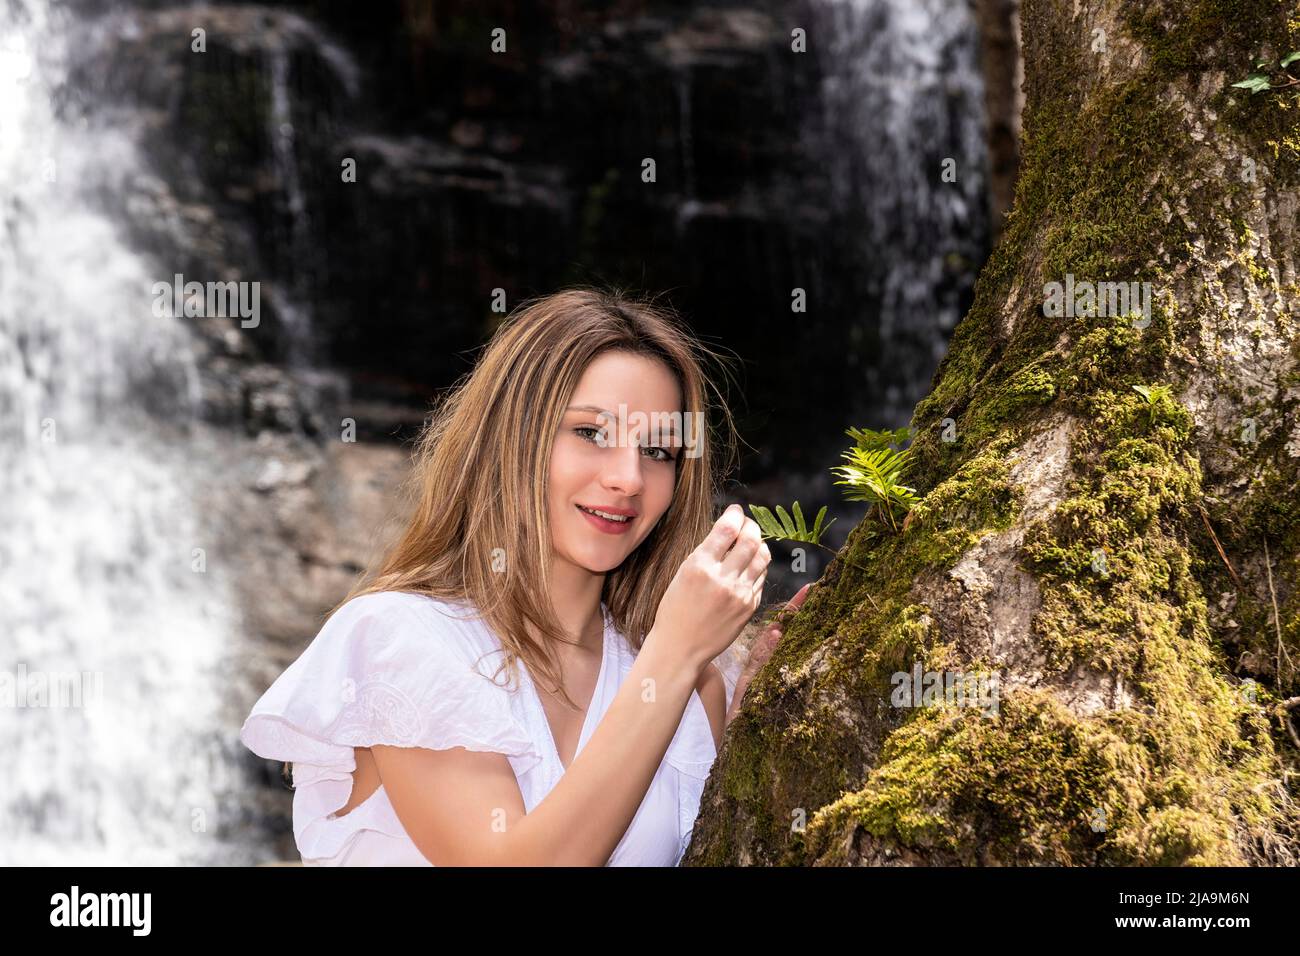 Lächelnde blonde Frau im Wald mit einem Wasserfall Stockfoto